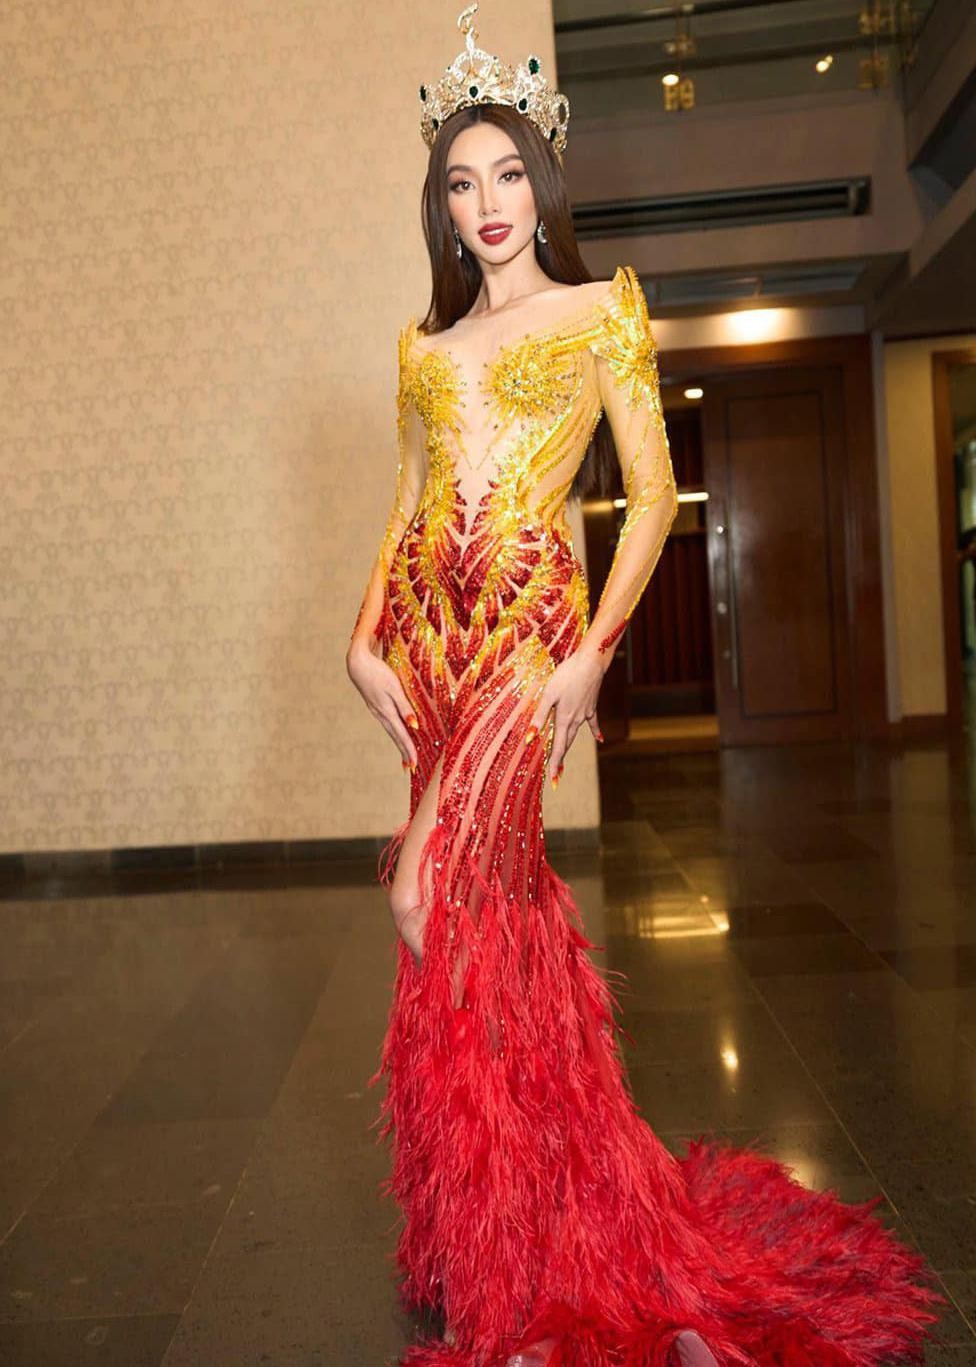 CHÍNH THỨC Thuỳ Tiên công bố váy dạ hội trình diễn trong đêm chung kết  Miss Grand 2021  Sao việt  Việt Giải Trí